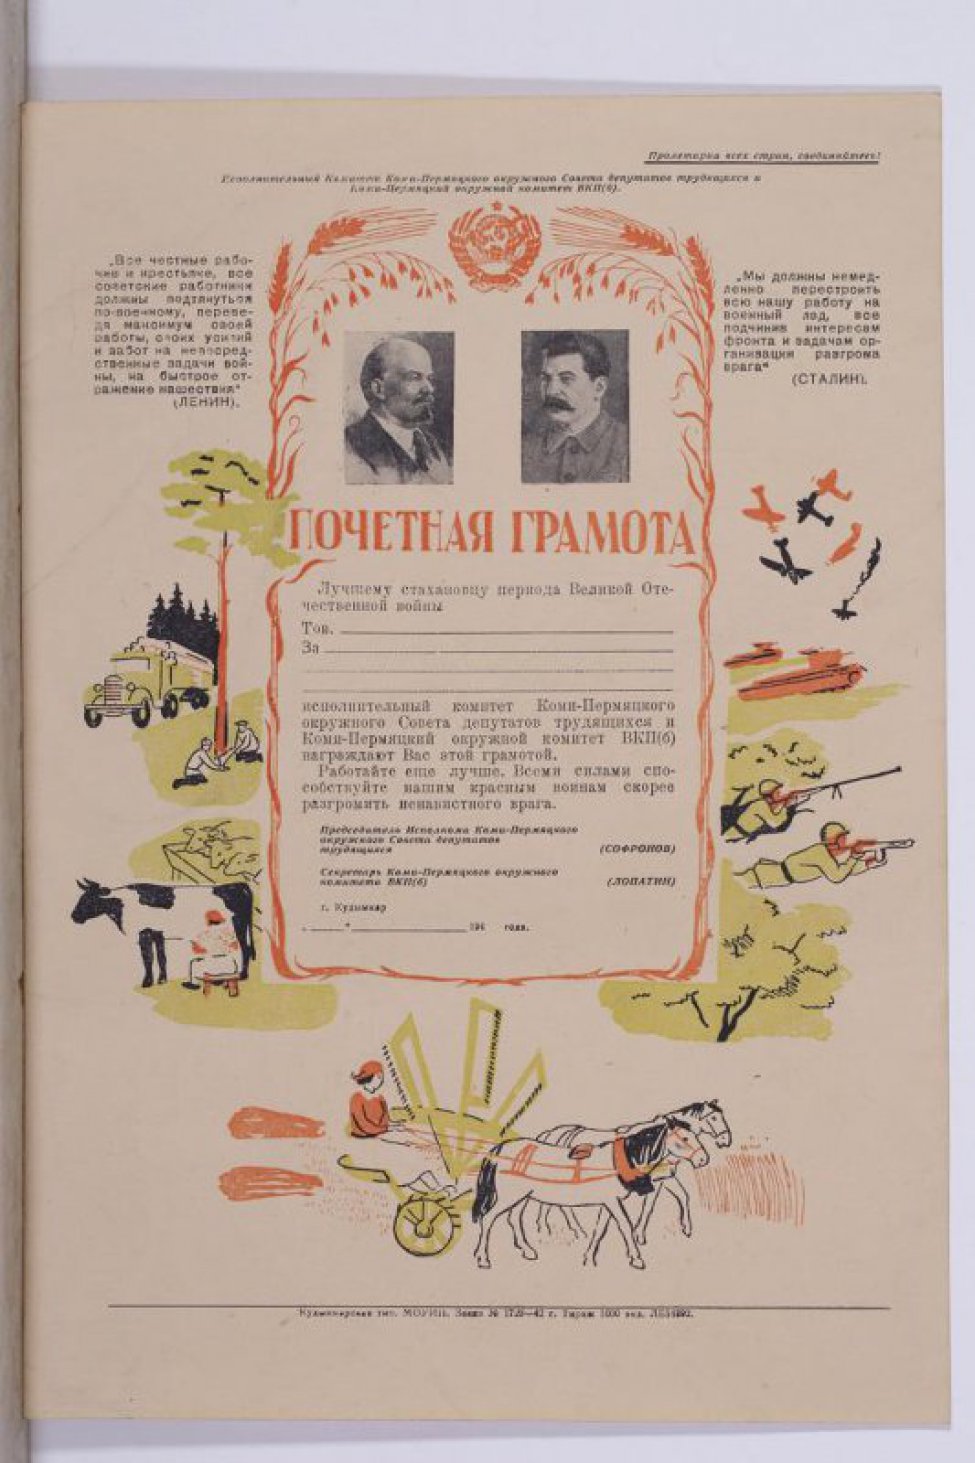 Изображены т.Сталин и Ленин в рамке с рисунком. На верху тексты т.Ленина и Сталина " Все честные... врага. Внизу:" Кудымкар".